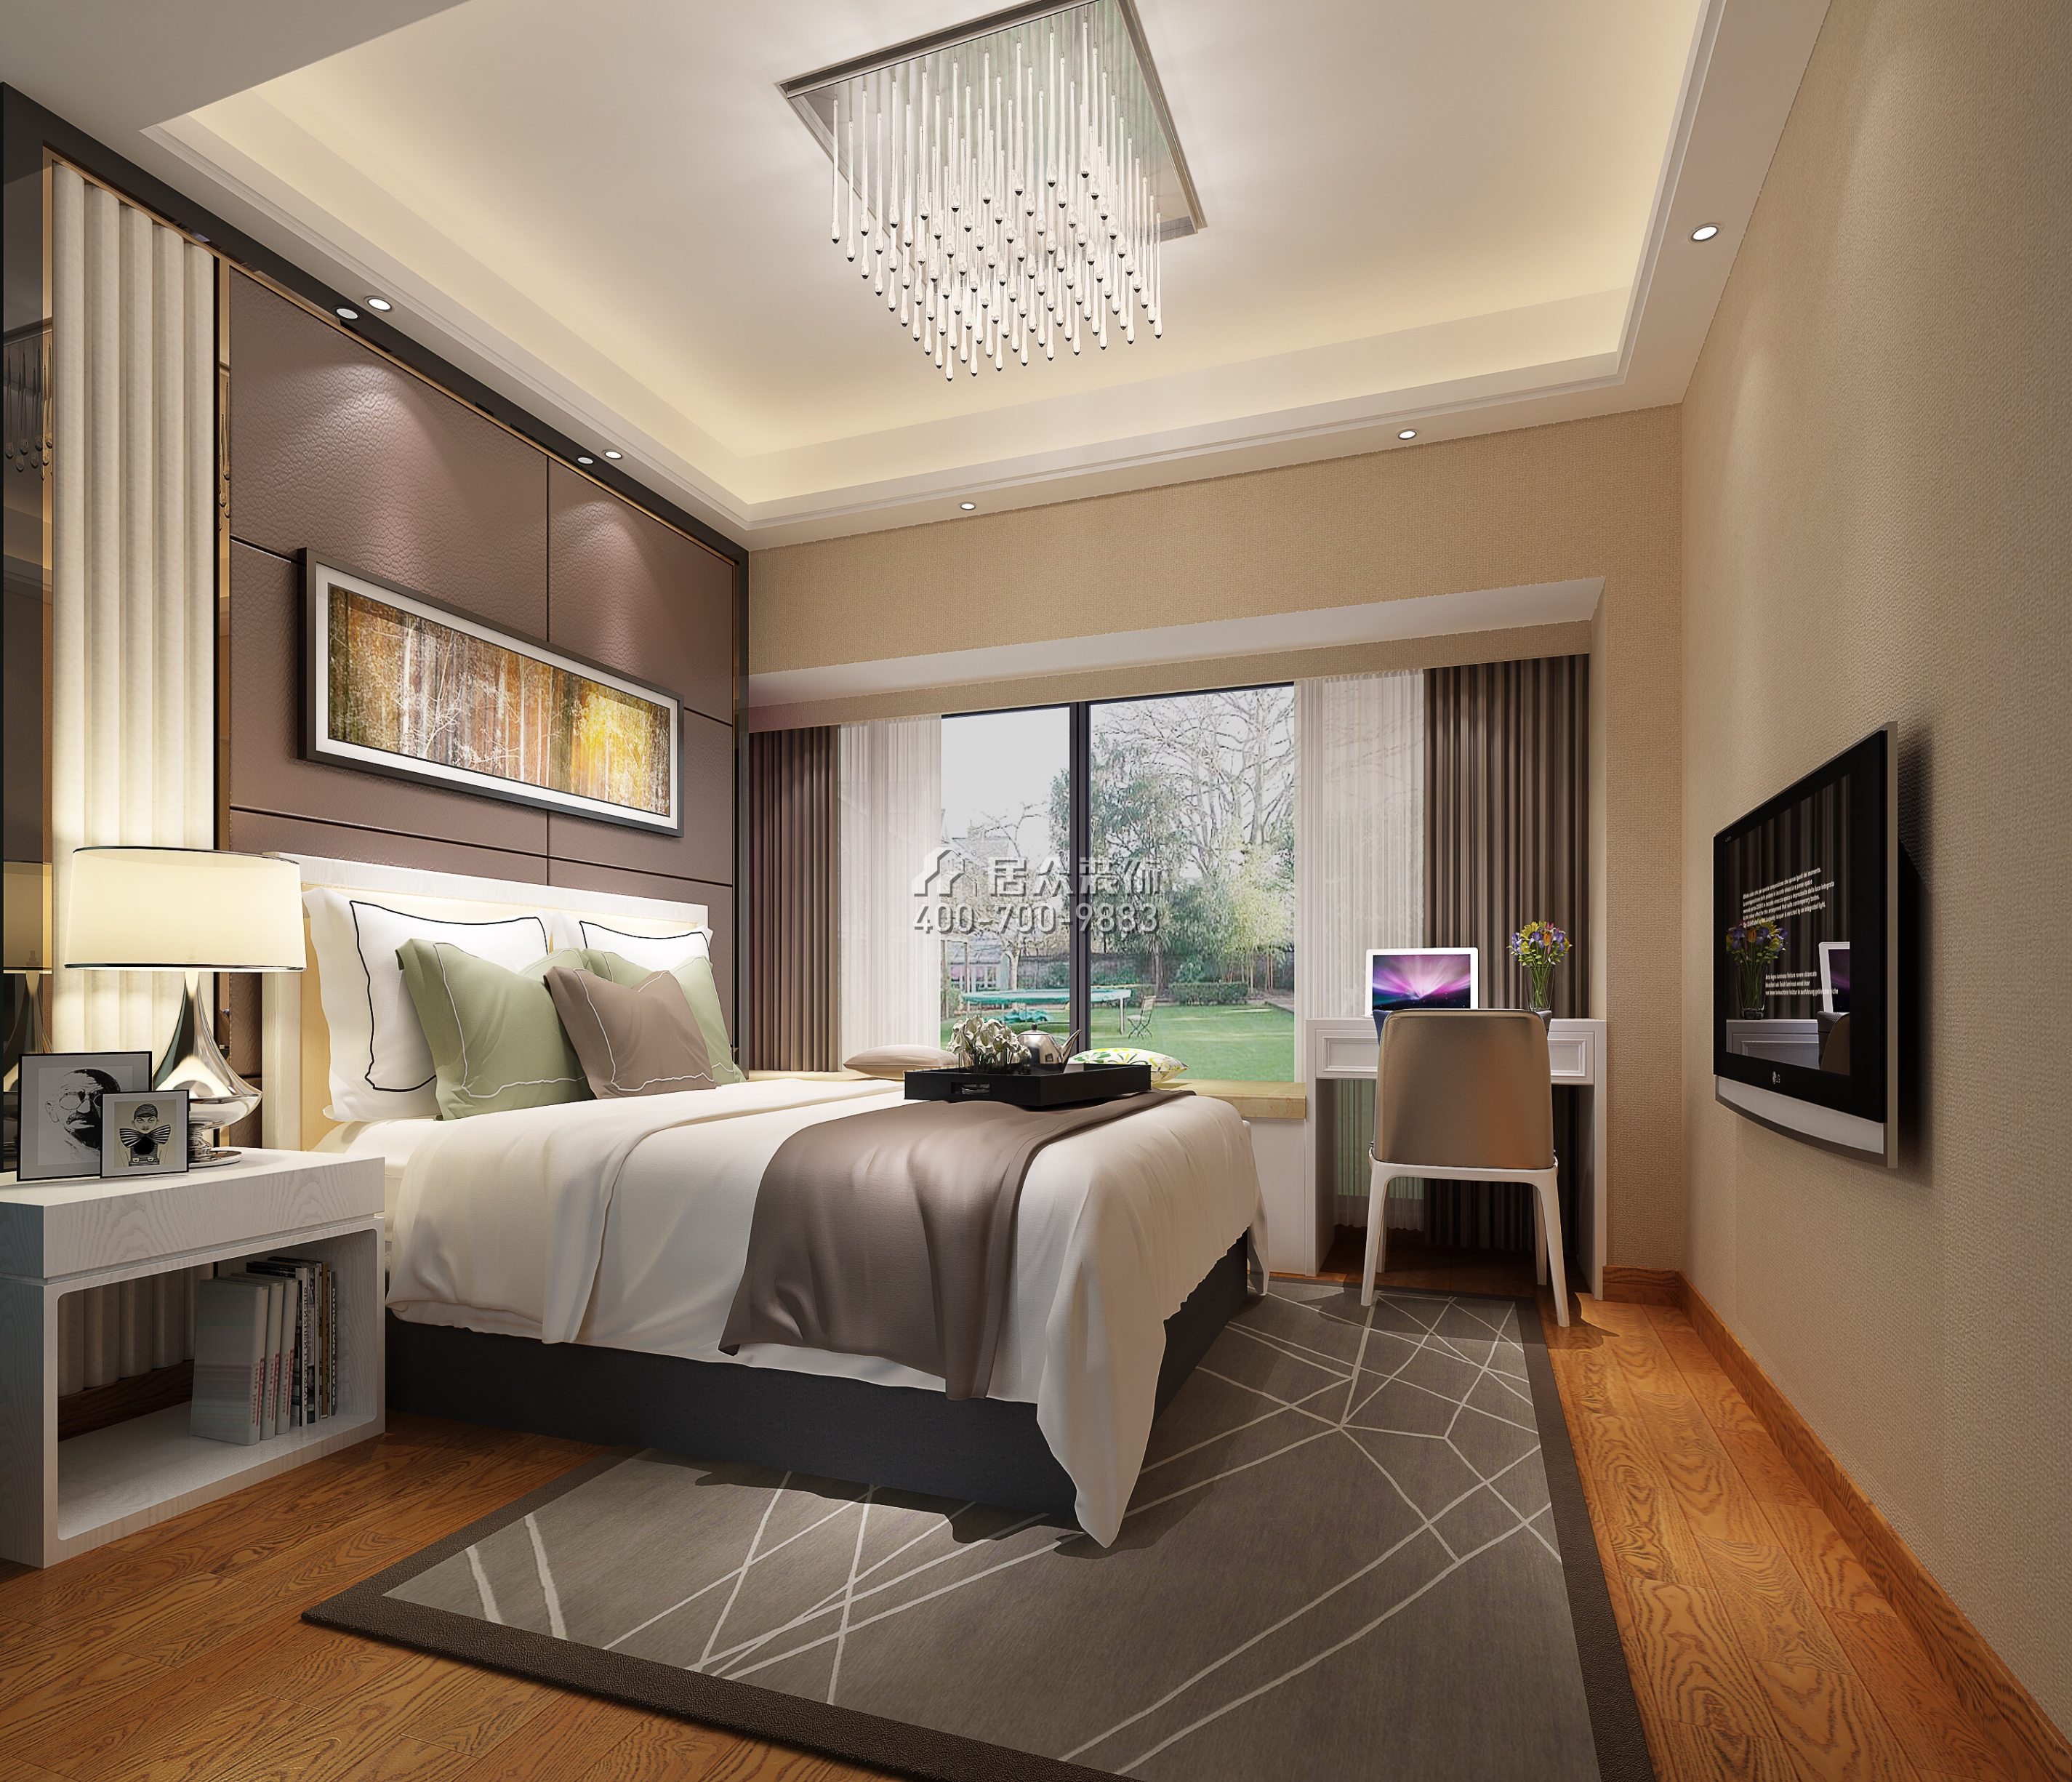 港信达银信广场89平方米现代简约风格平层户型卧室装修效果图